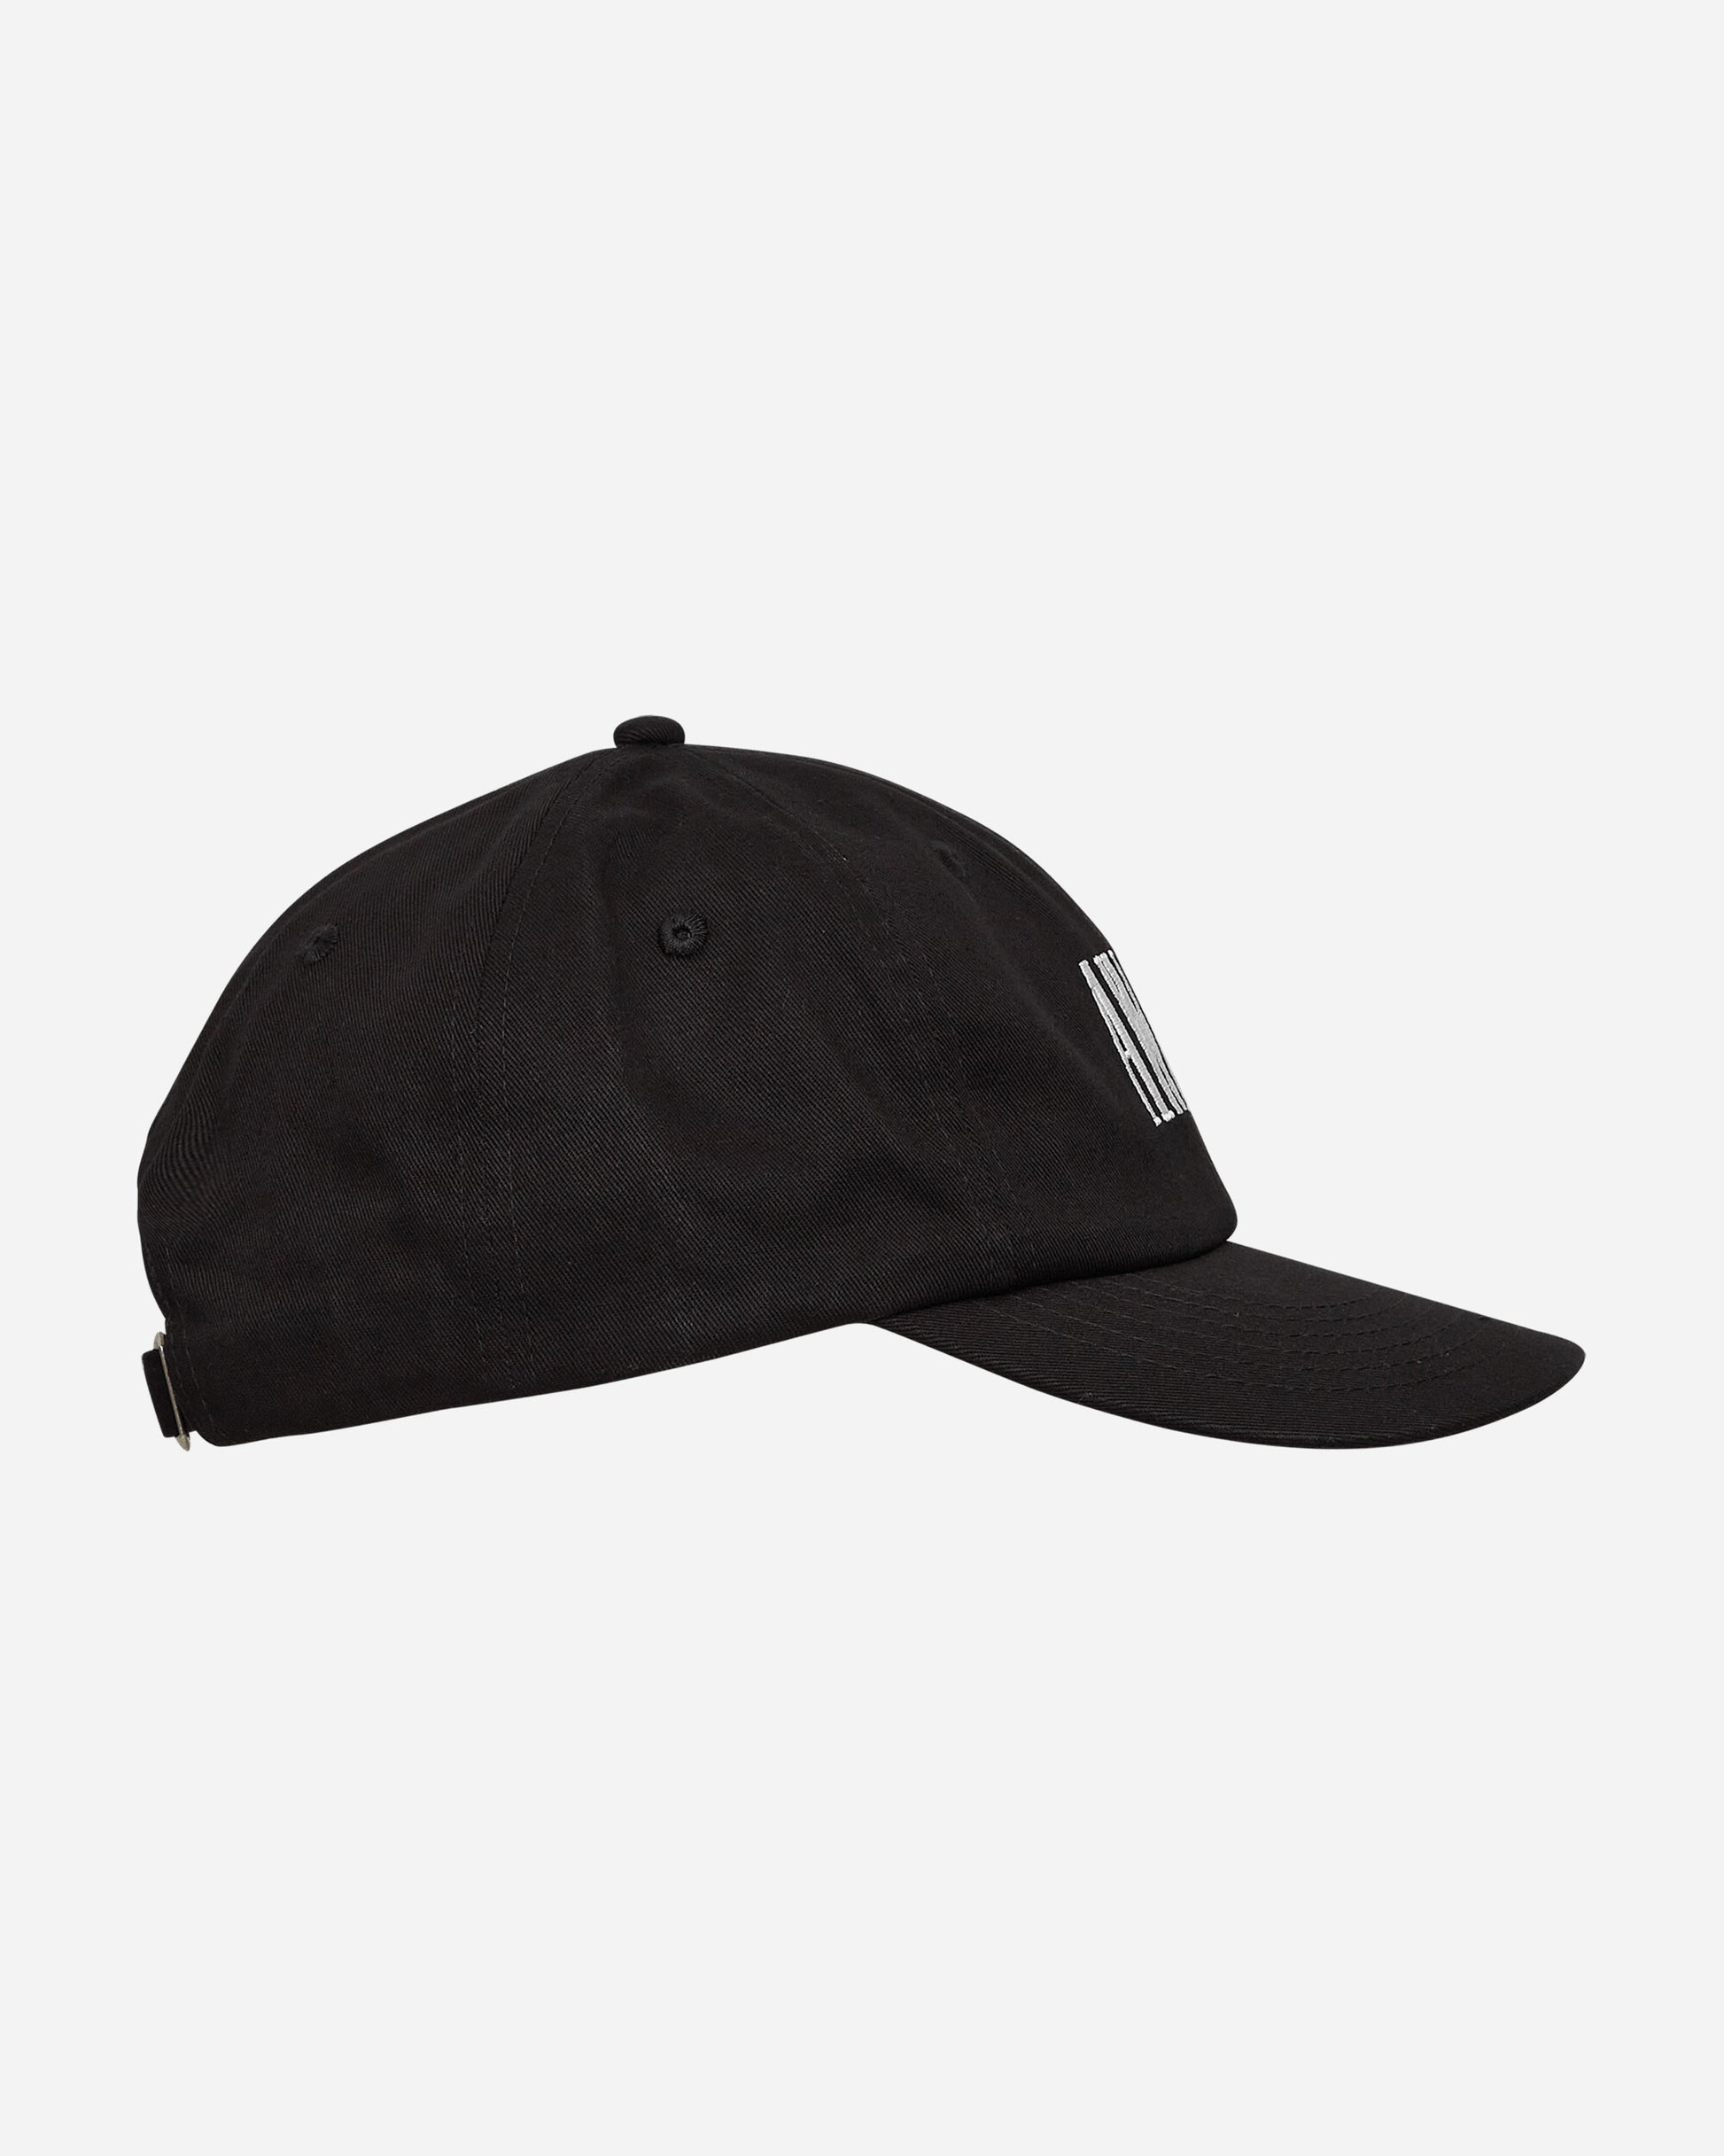 Awake NY Logo Hat Black Hats Caps 9031841 BLK